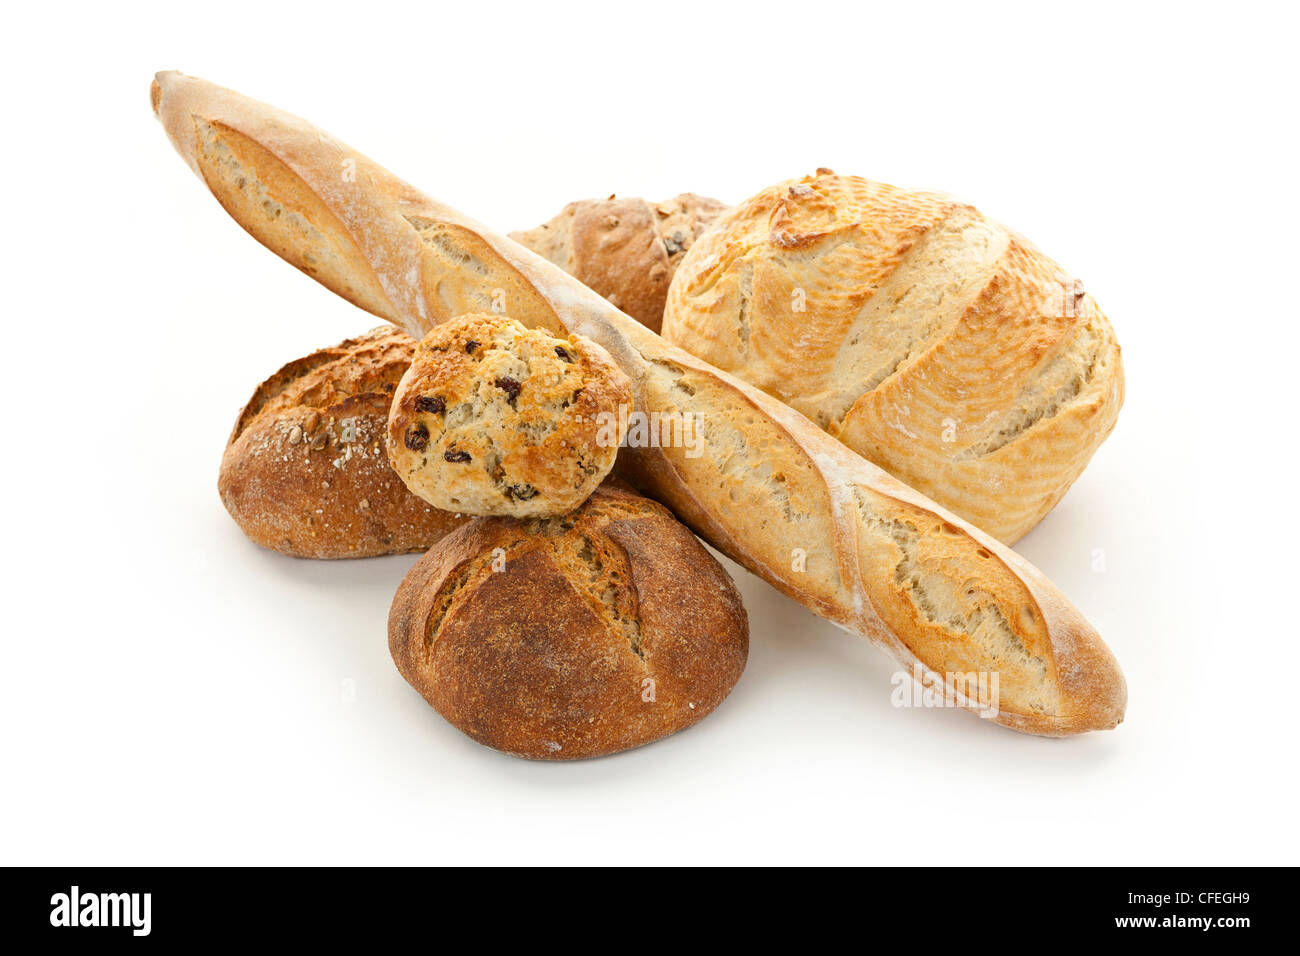 Différents types de pains sur fond blanc Banque D'Images